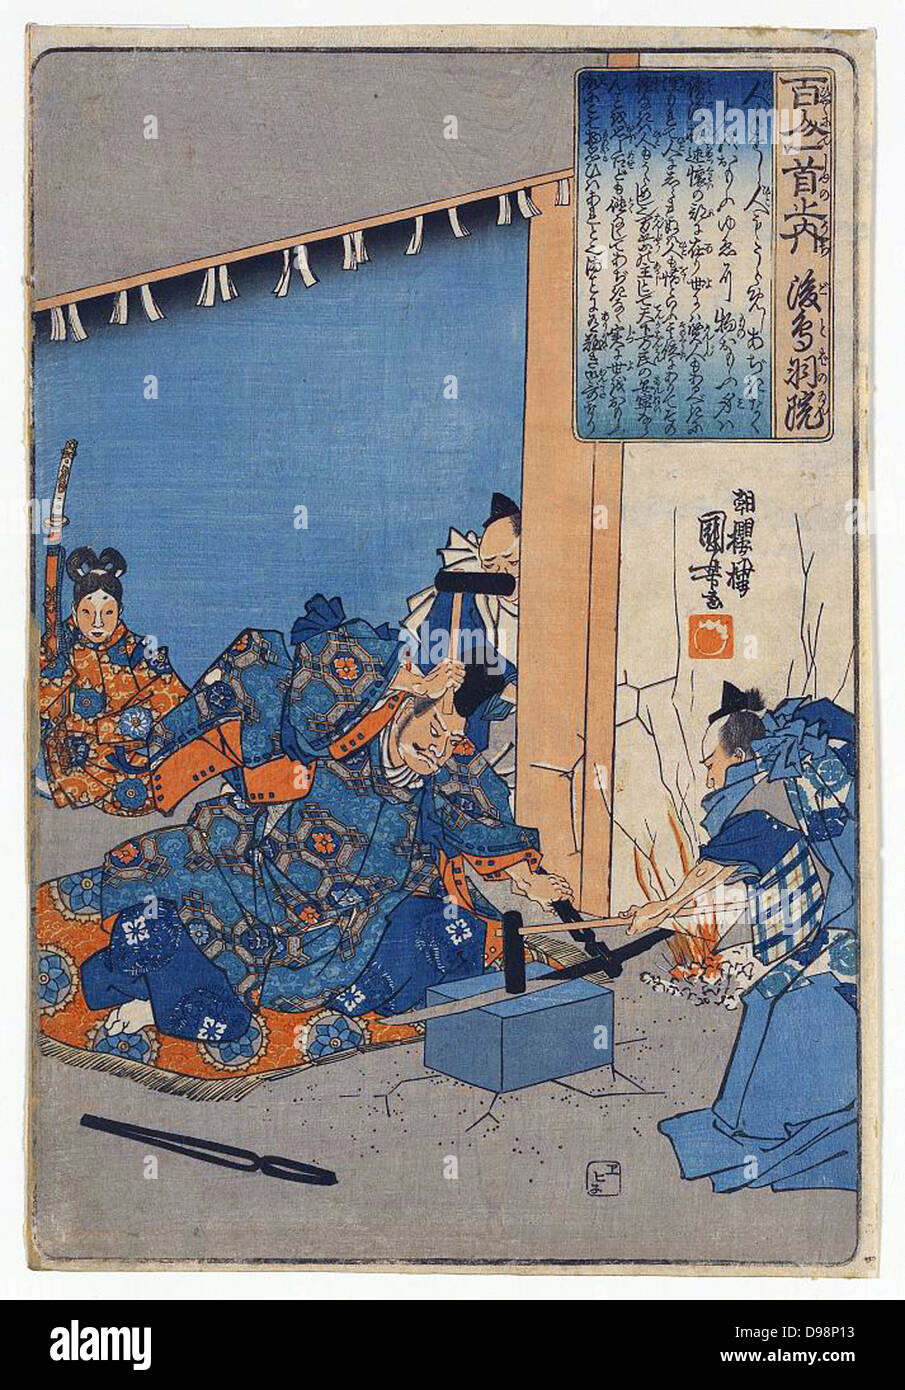 L'Empereur Go-Toba Forger une épée', c1840. Go-Toba, c1221, en exil sur l'île d'Oki a étudié des épées et swordmaking. Utagawa Kuniyoshi (1797-1861) artiste japonais Ukiyo-e. Artisan fabriquant d'armes de la métallurgie Banque D'Images